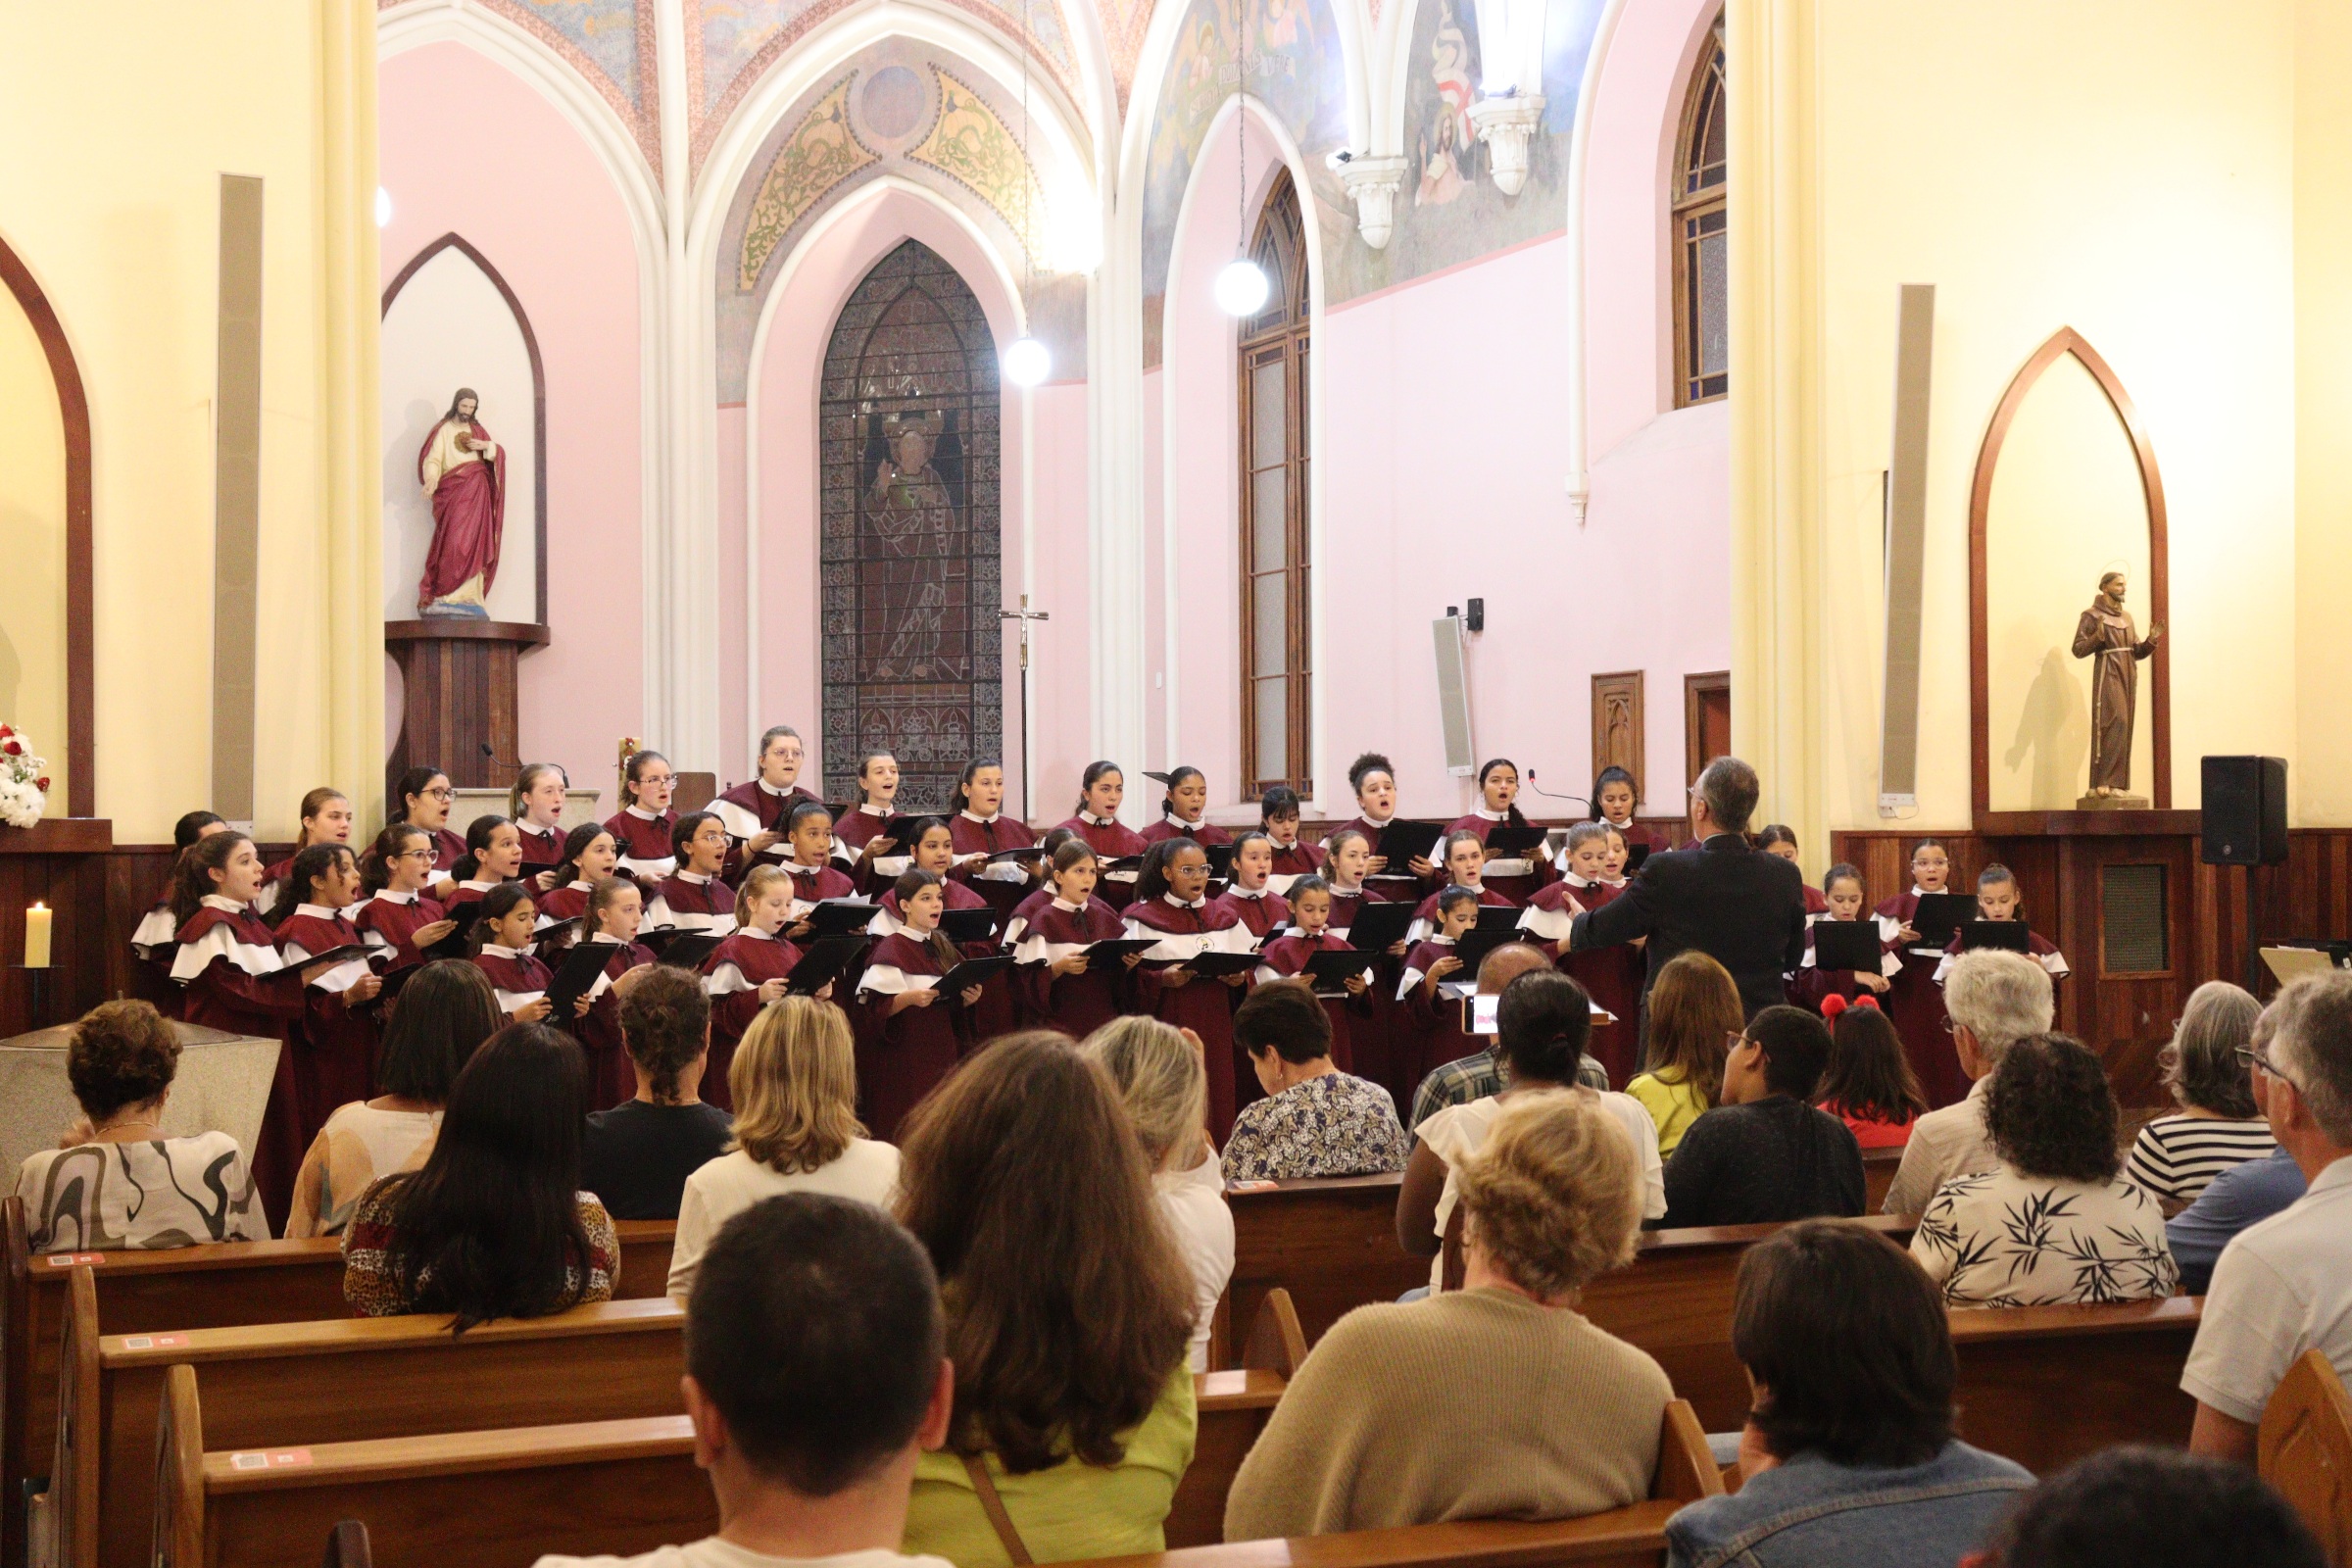 Concerto Mariano com o Coral das Meninas dos Canarinhos na Igreja do Sagrado